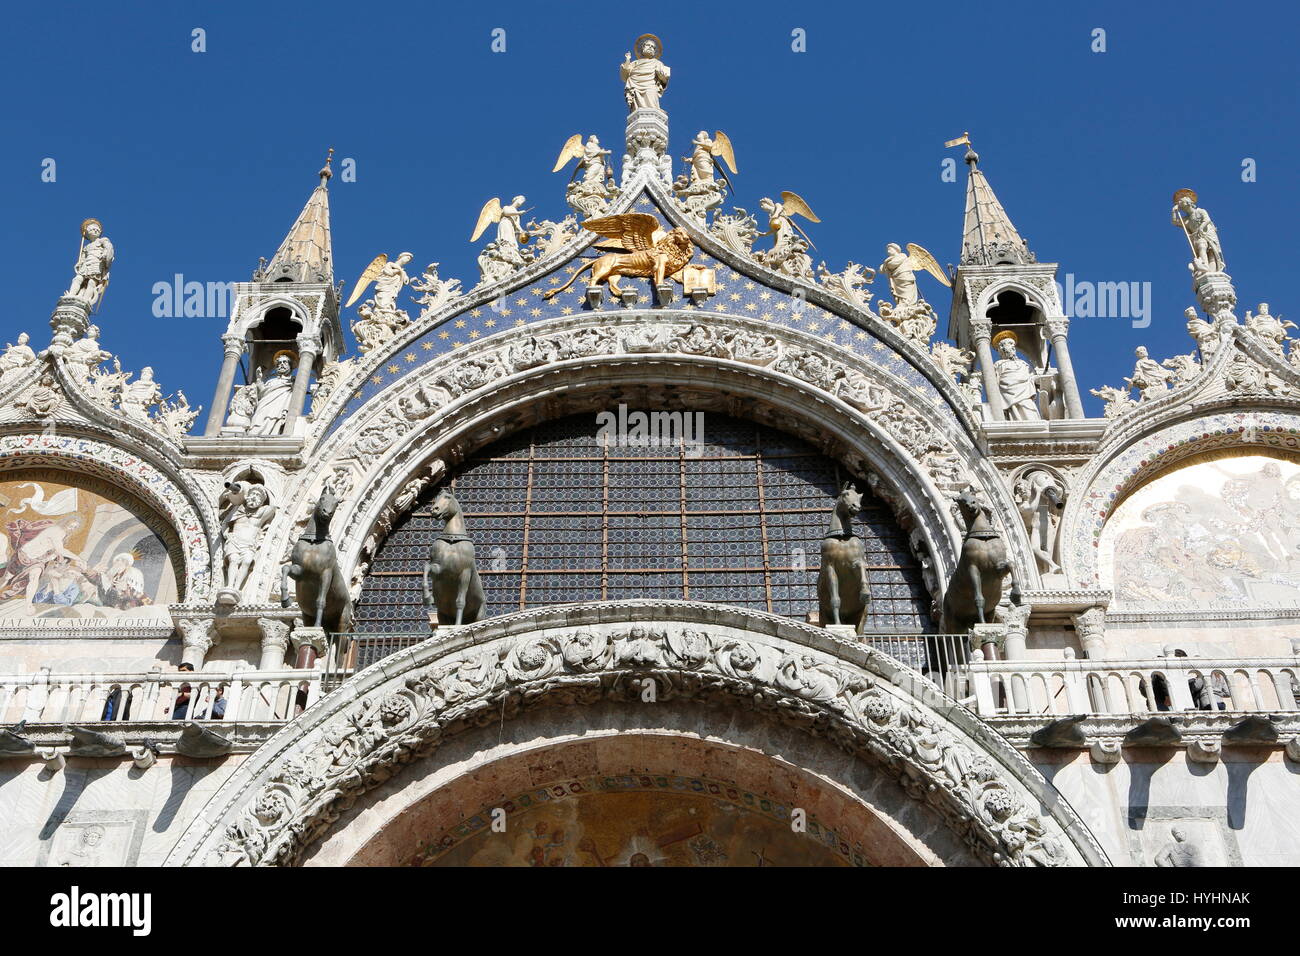 La basilique de San Marco, chevaux de San Marco, Piazza San Marco, Venice, Veneto, Italie Banque D'Images